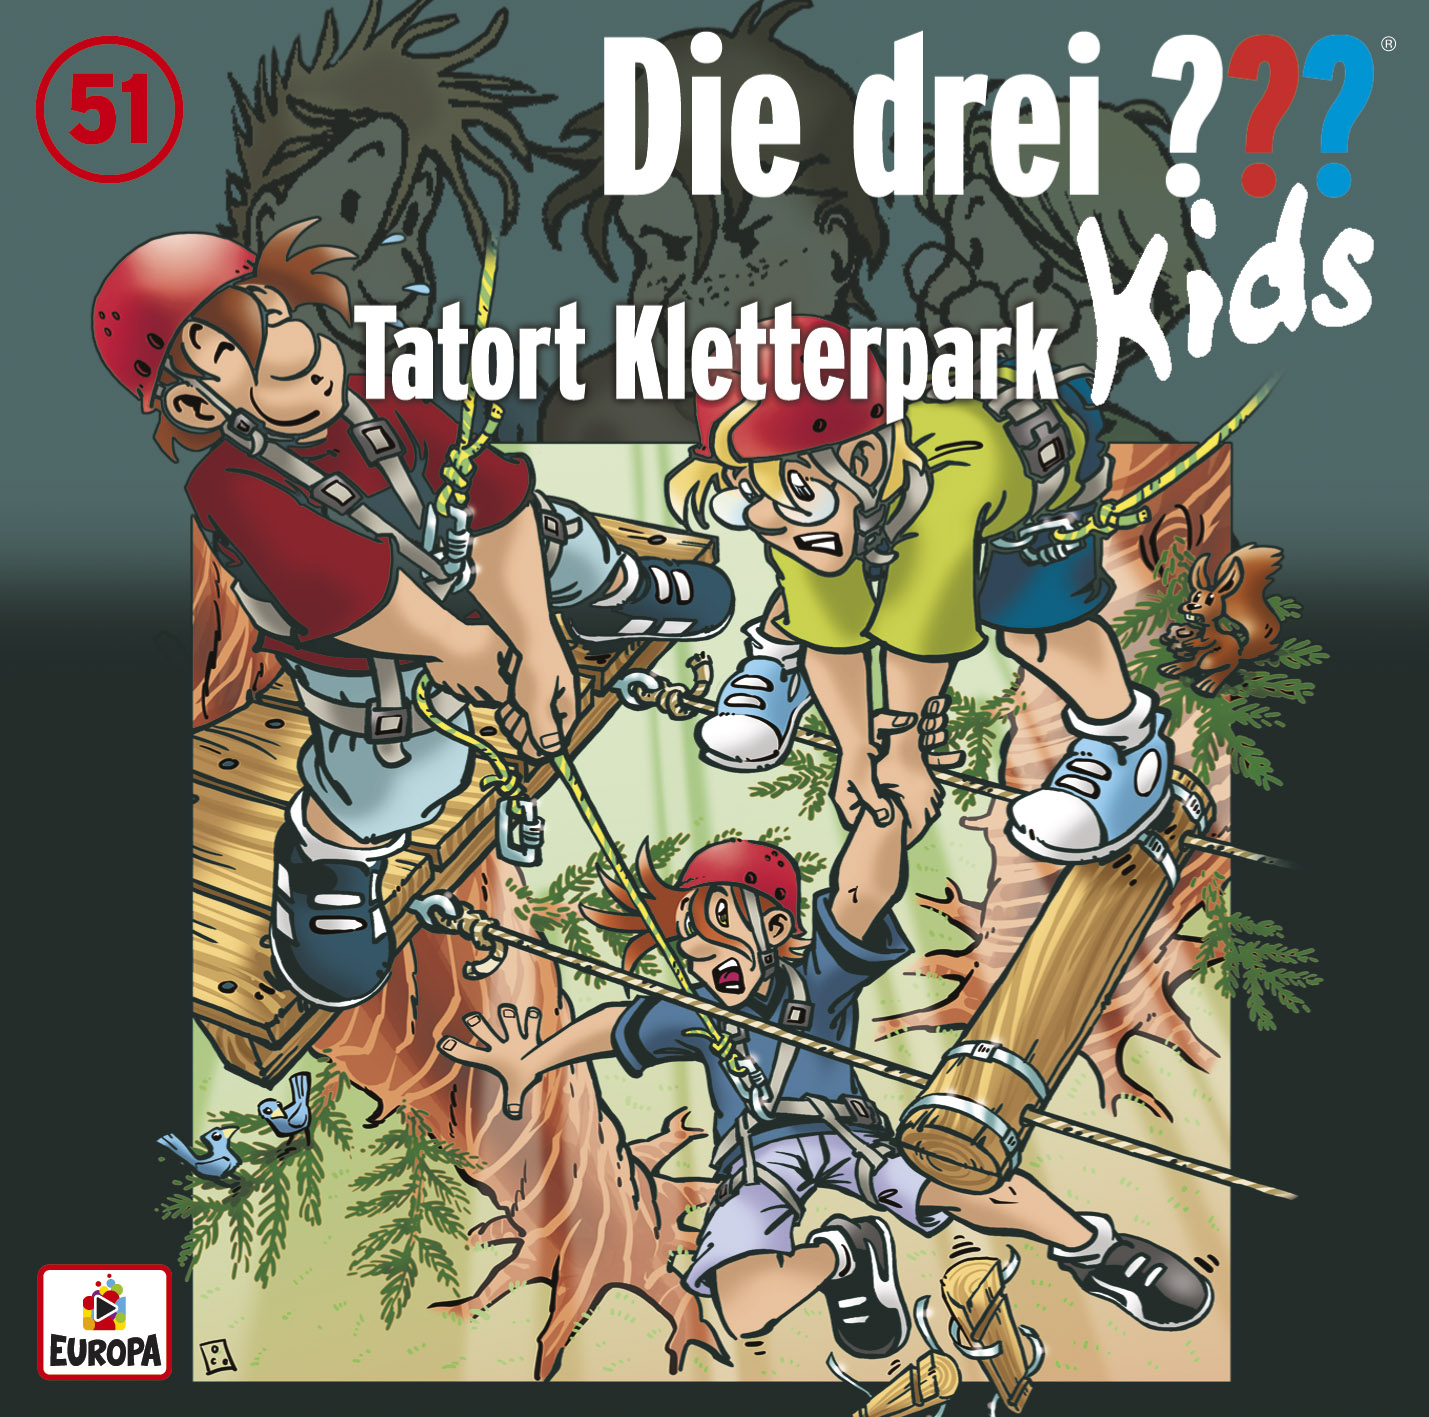 Die Drei ??? (Fragezeichen) Kids, Hörspiel-Folge 51: Tatort Kletterpark